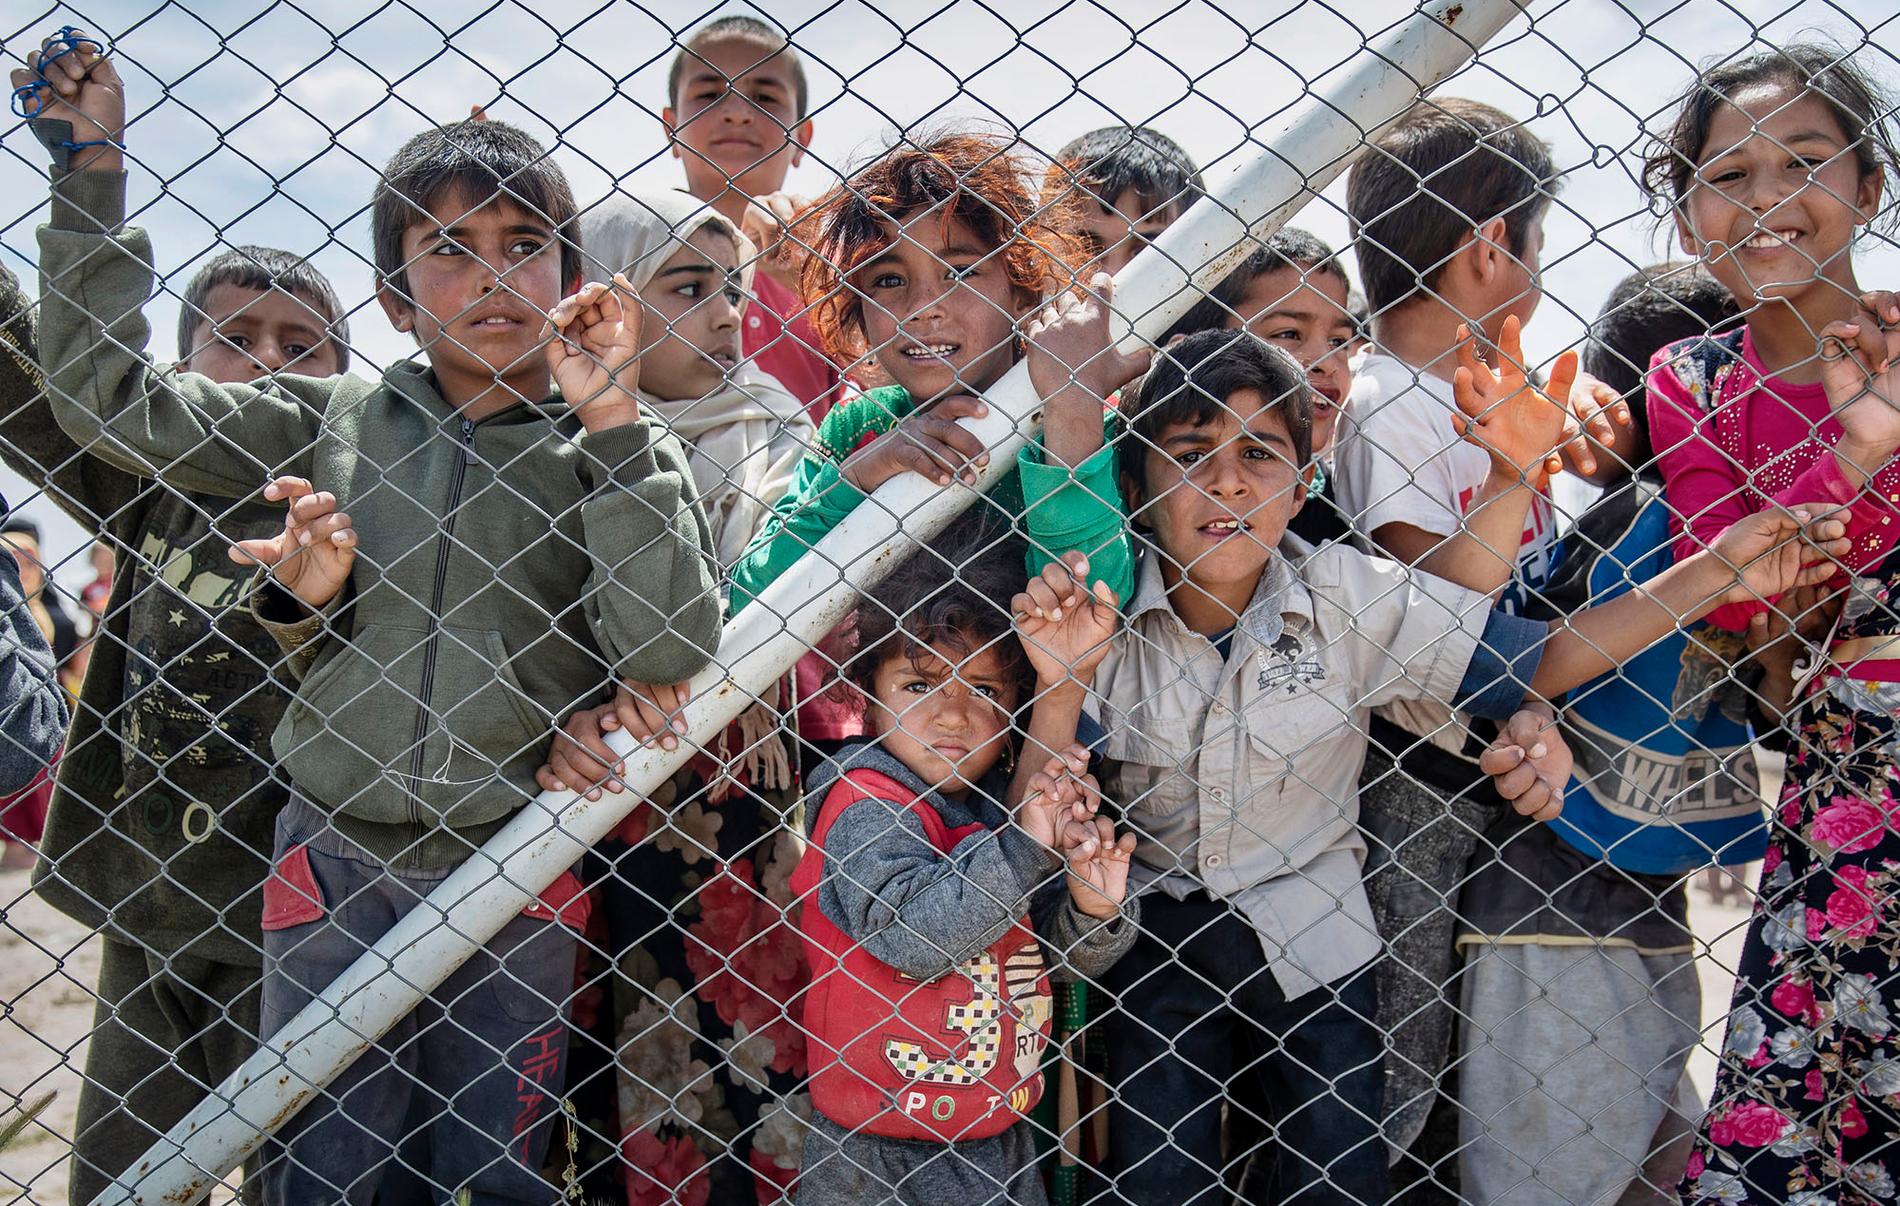 Barn hålls fångna i al-Hol-lägret i Syrien i väntan på beslut om vart de ska ta vägen.